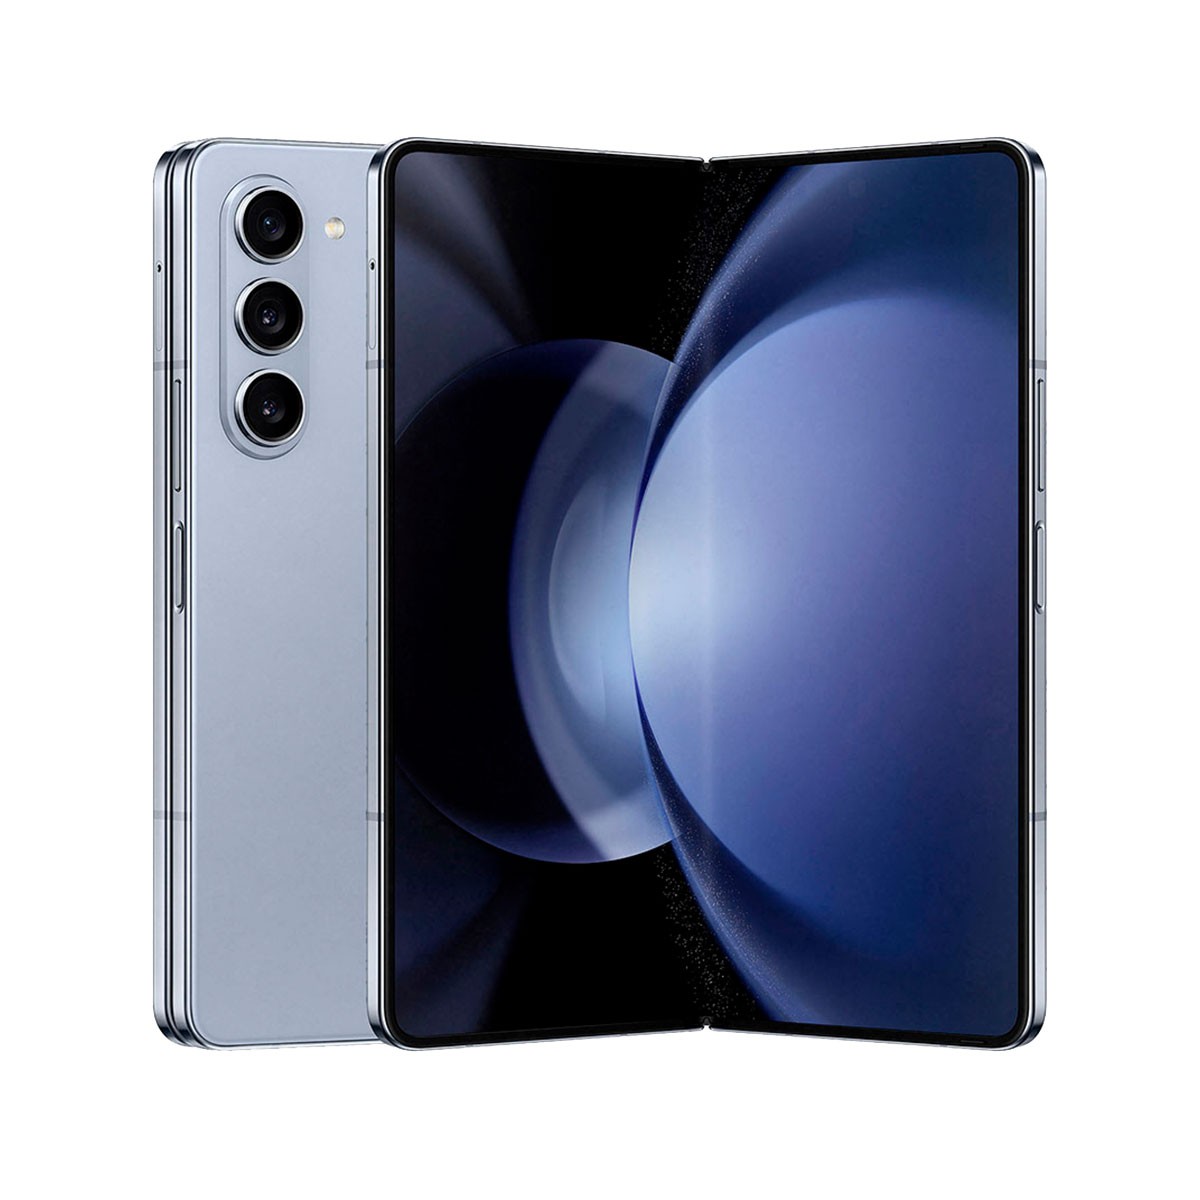 Smartphone Samsung Galaxy Z Fold 5 7.6" 256GB/12GB Dual SIM Icy Blue